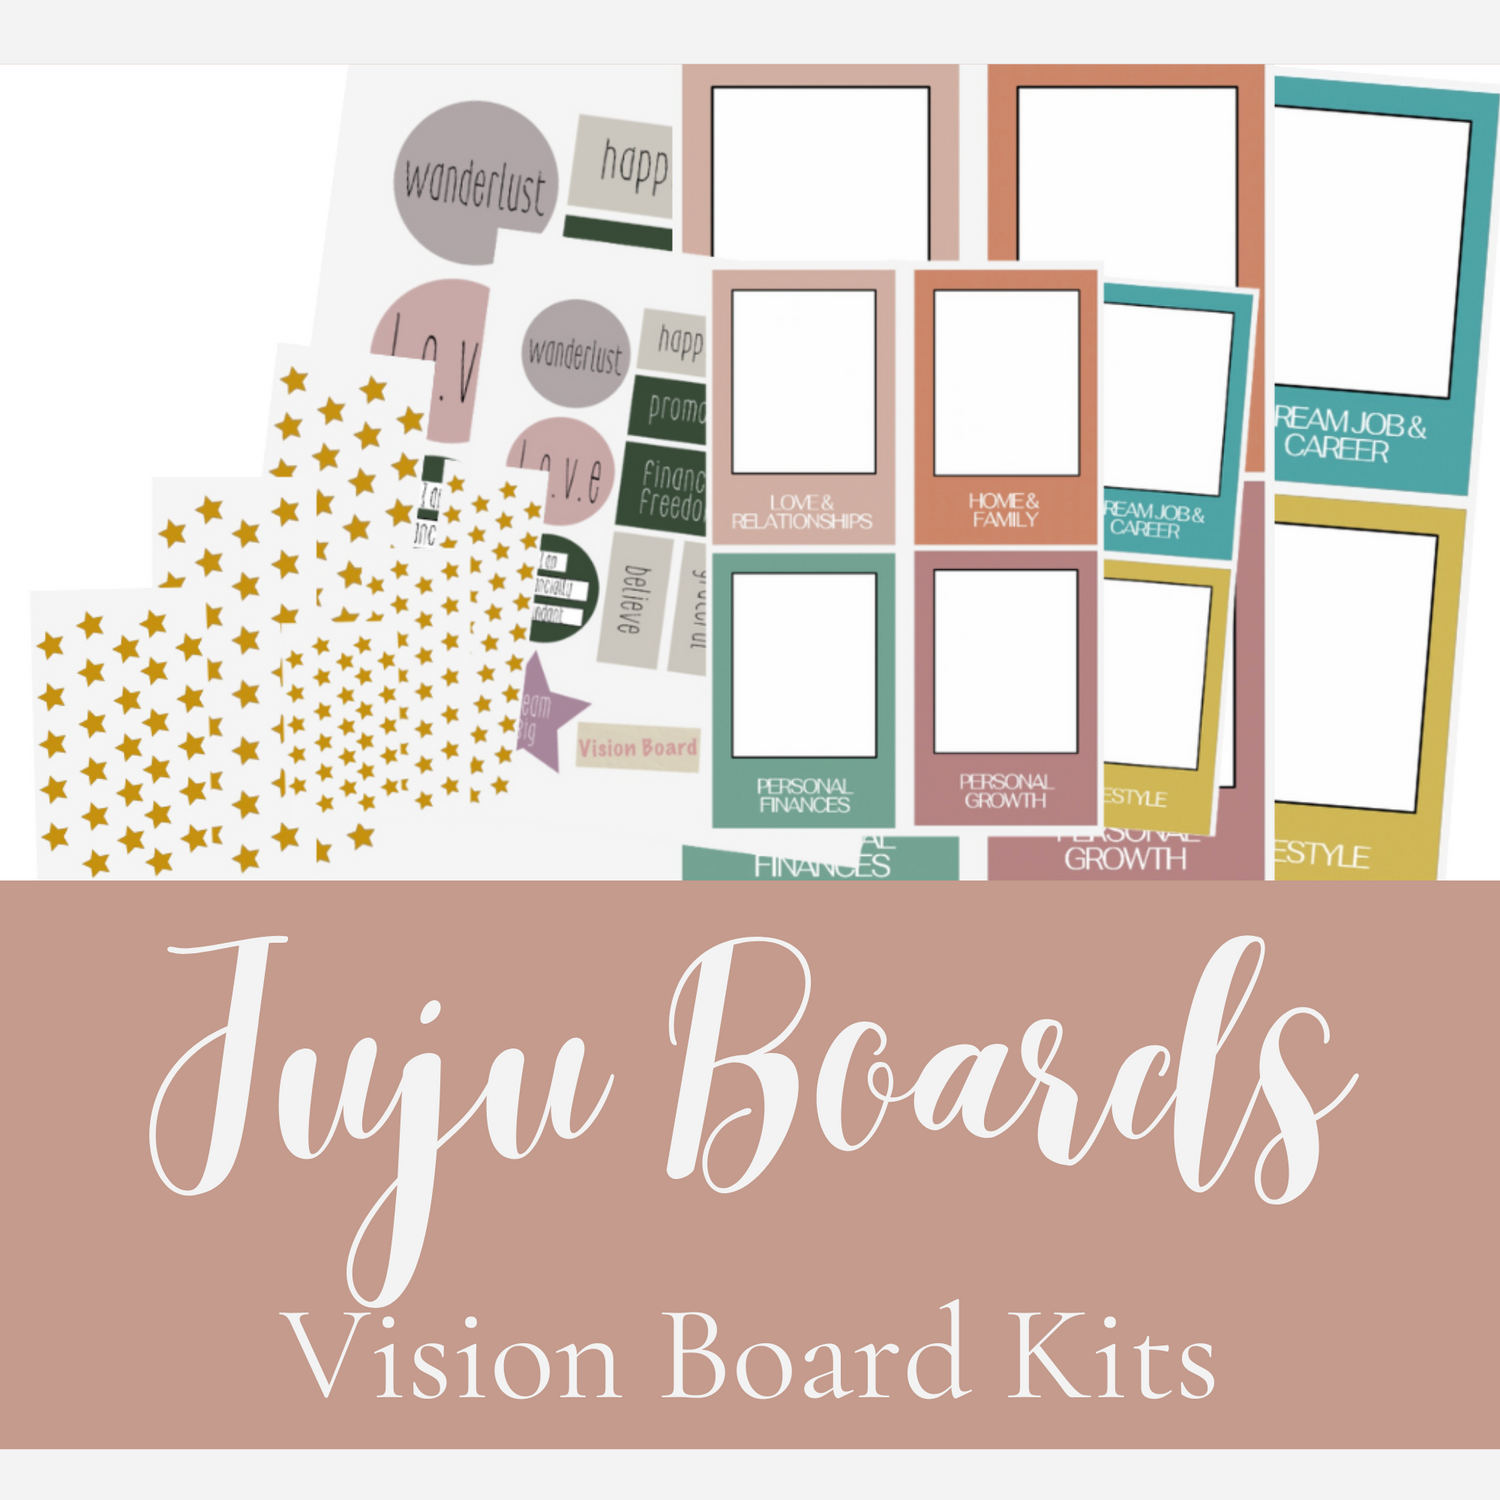 Vision Board Kits